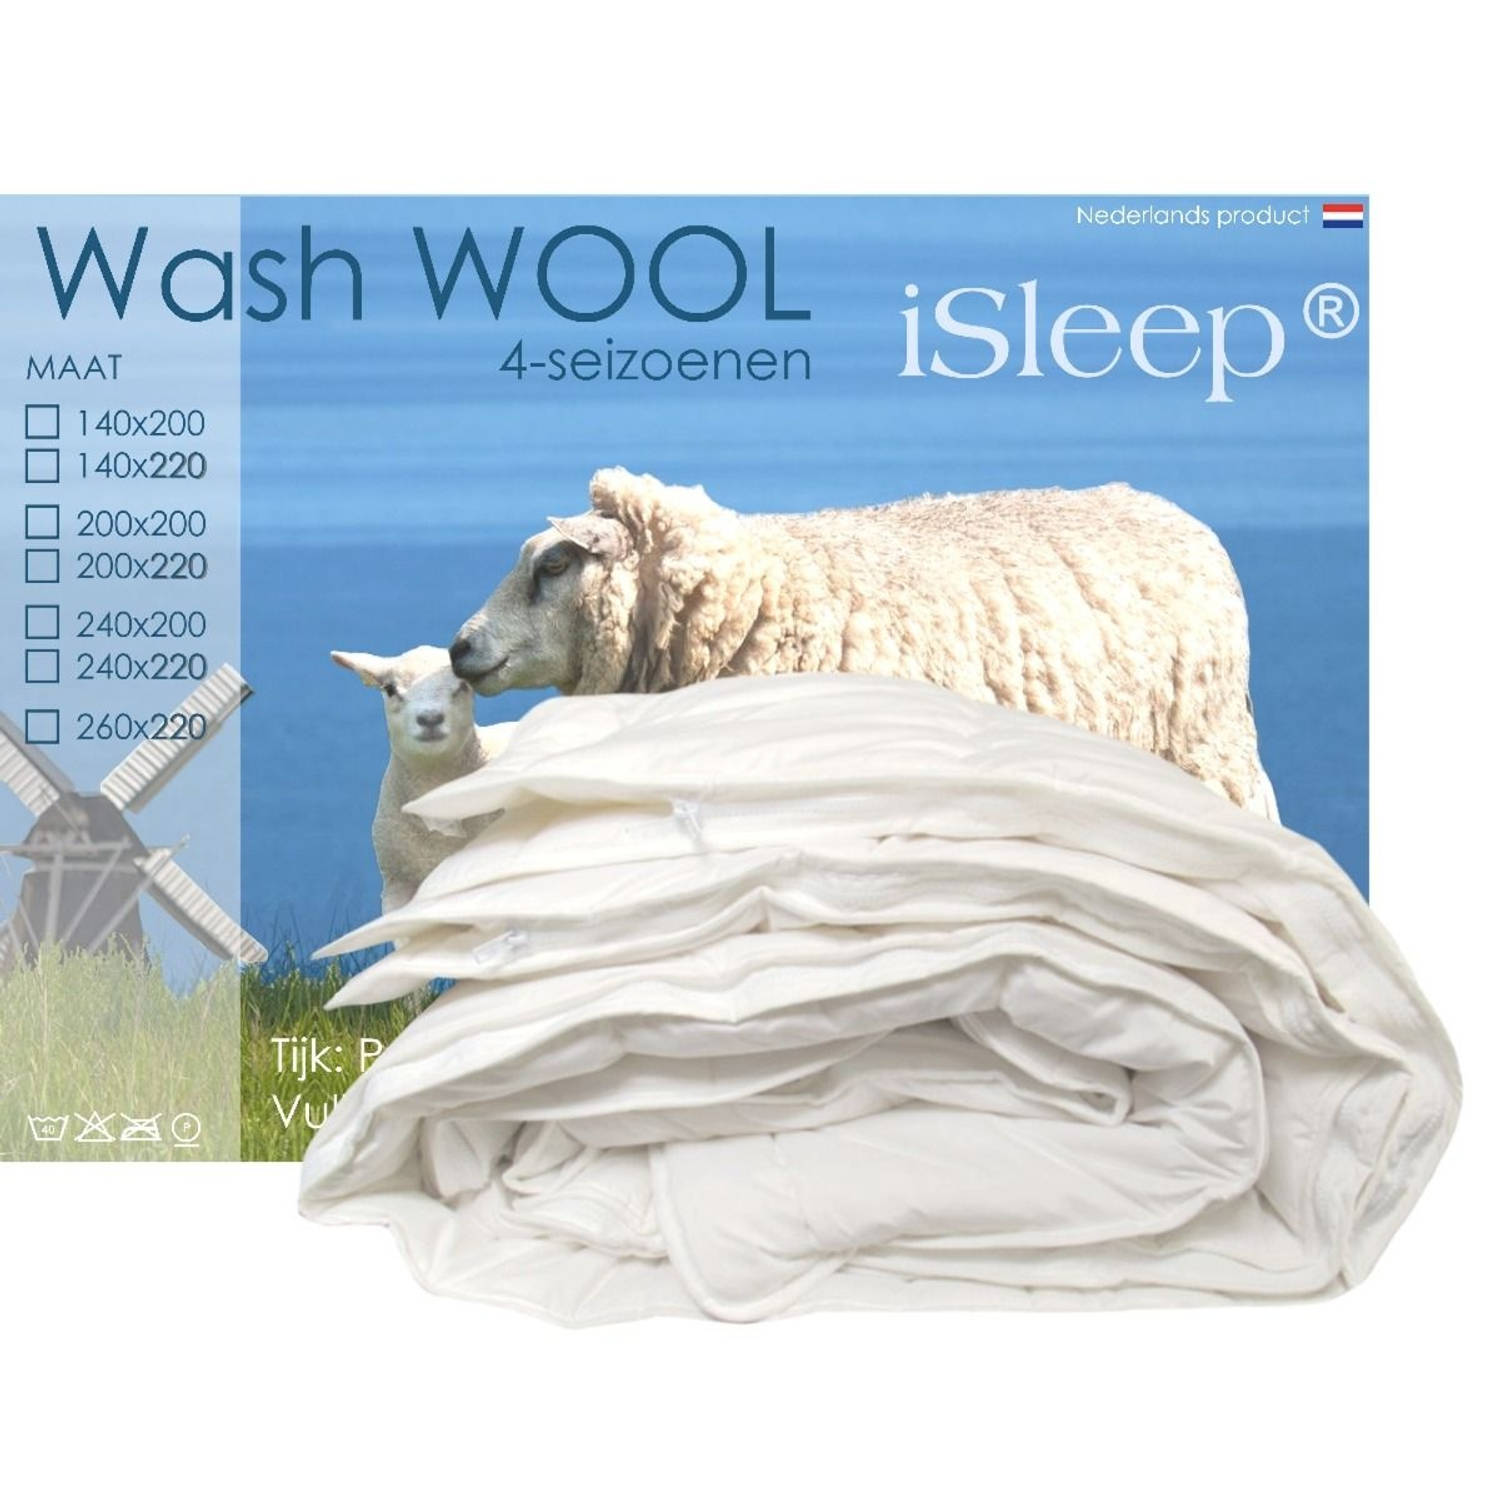 iSleep Wash Wool wollen 4-seizoenen dekbed wasbare wol Lits-jumeaux 240x200 cm